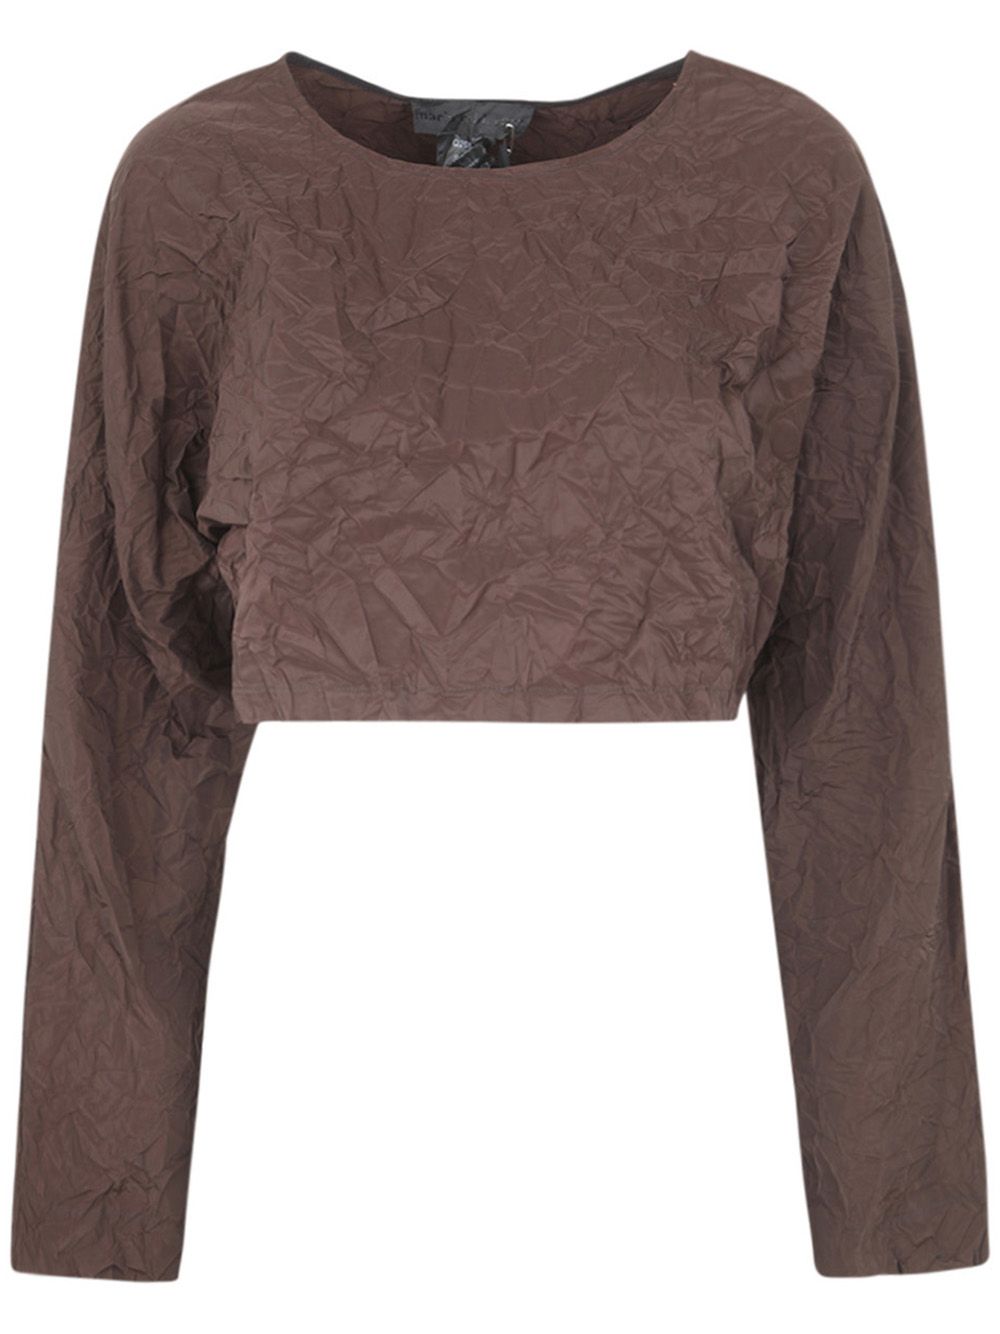 Maria Calderara Crinkled Opaque Taffeta Sweater In Brown